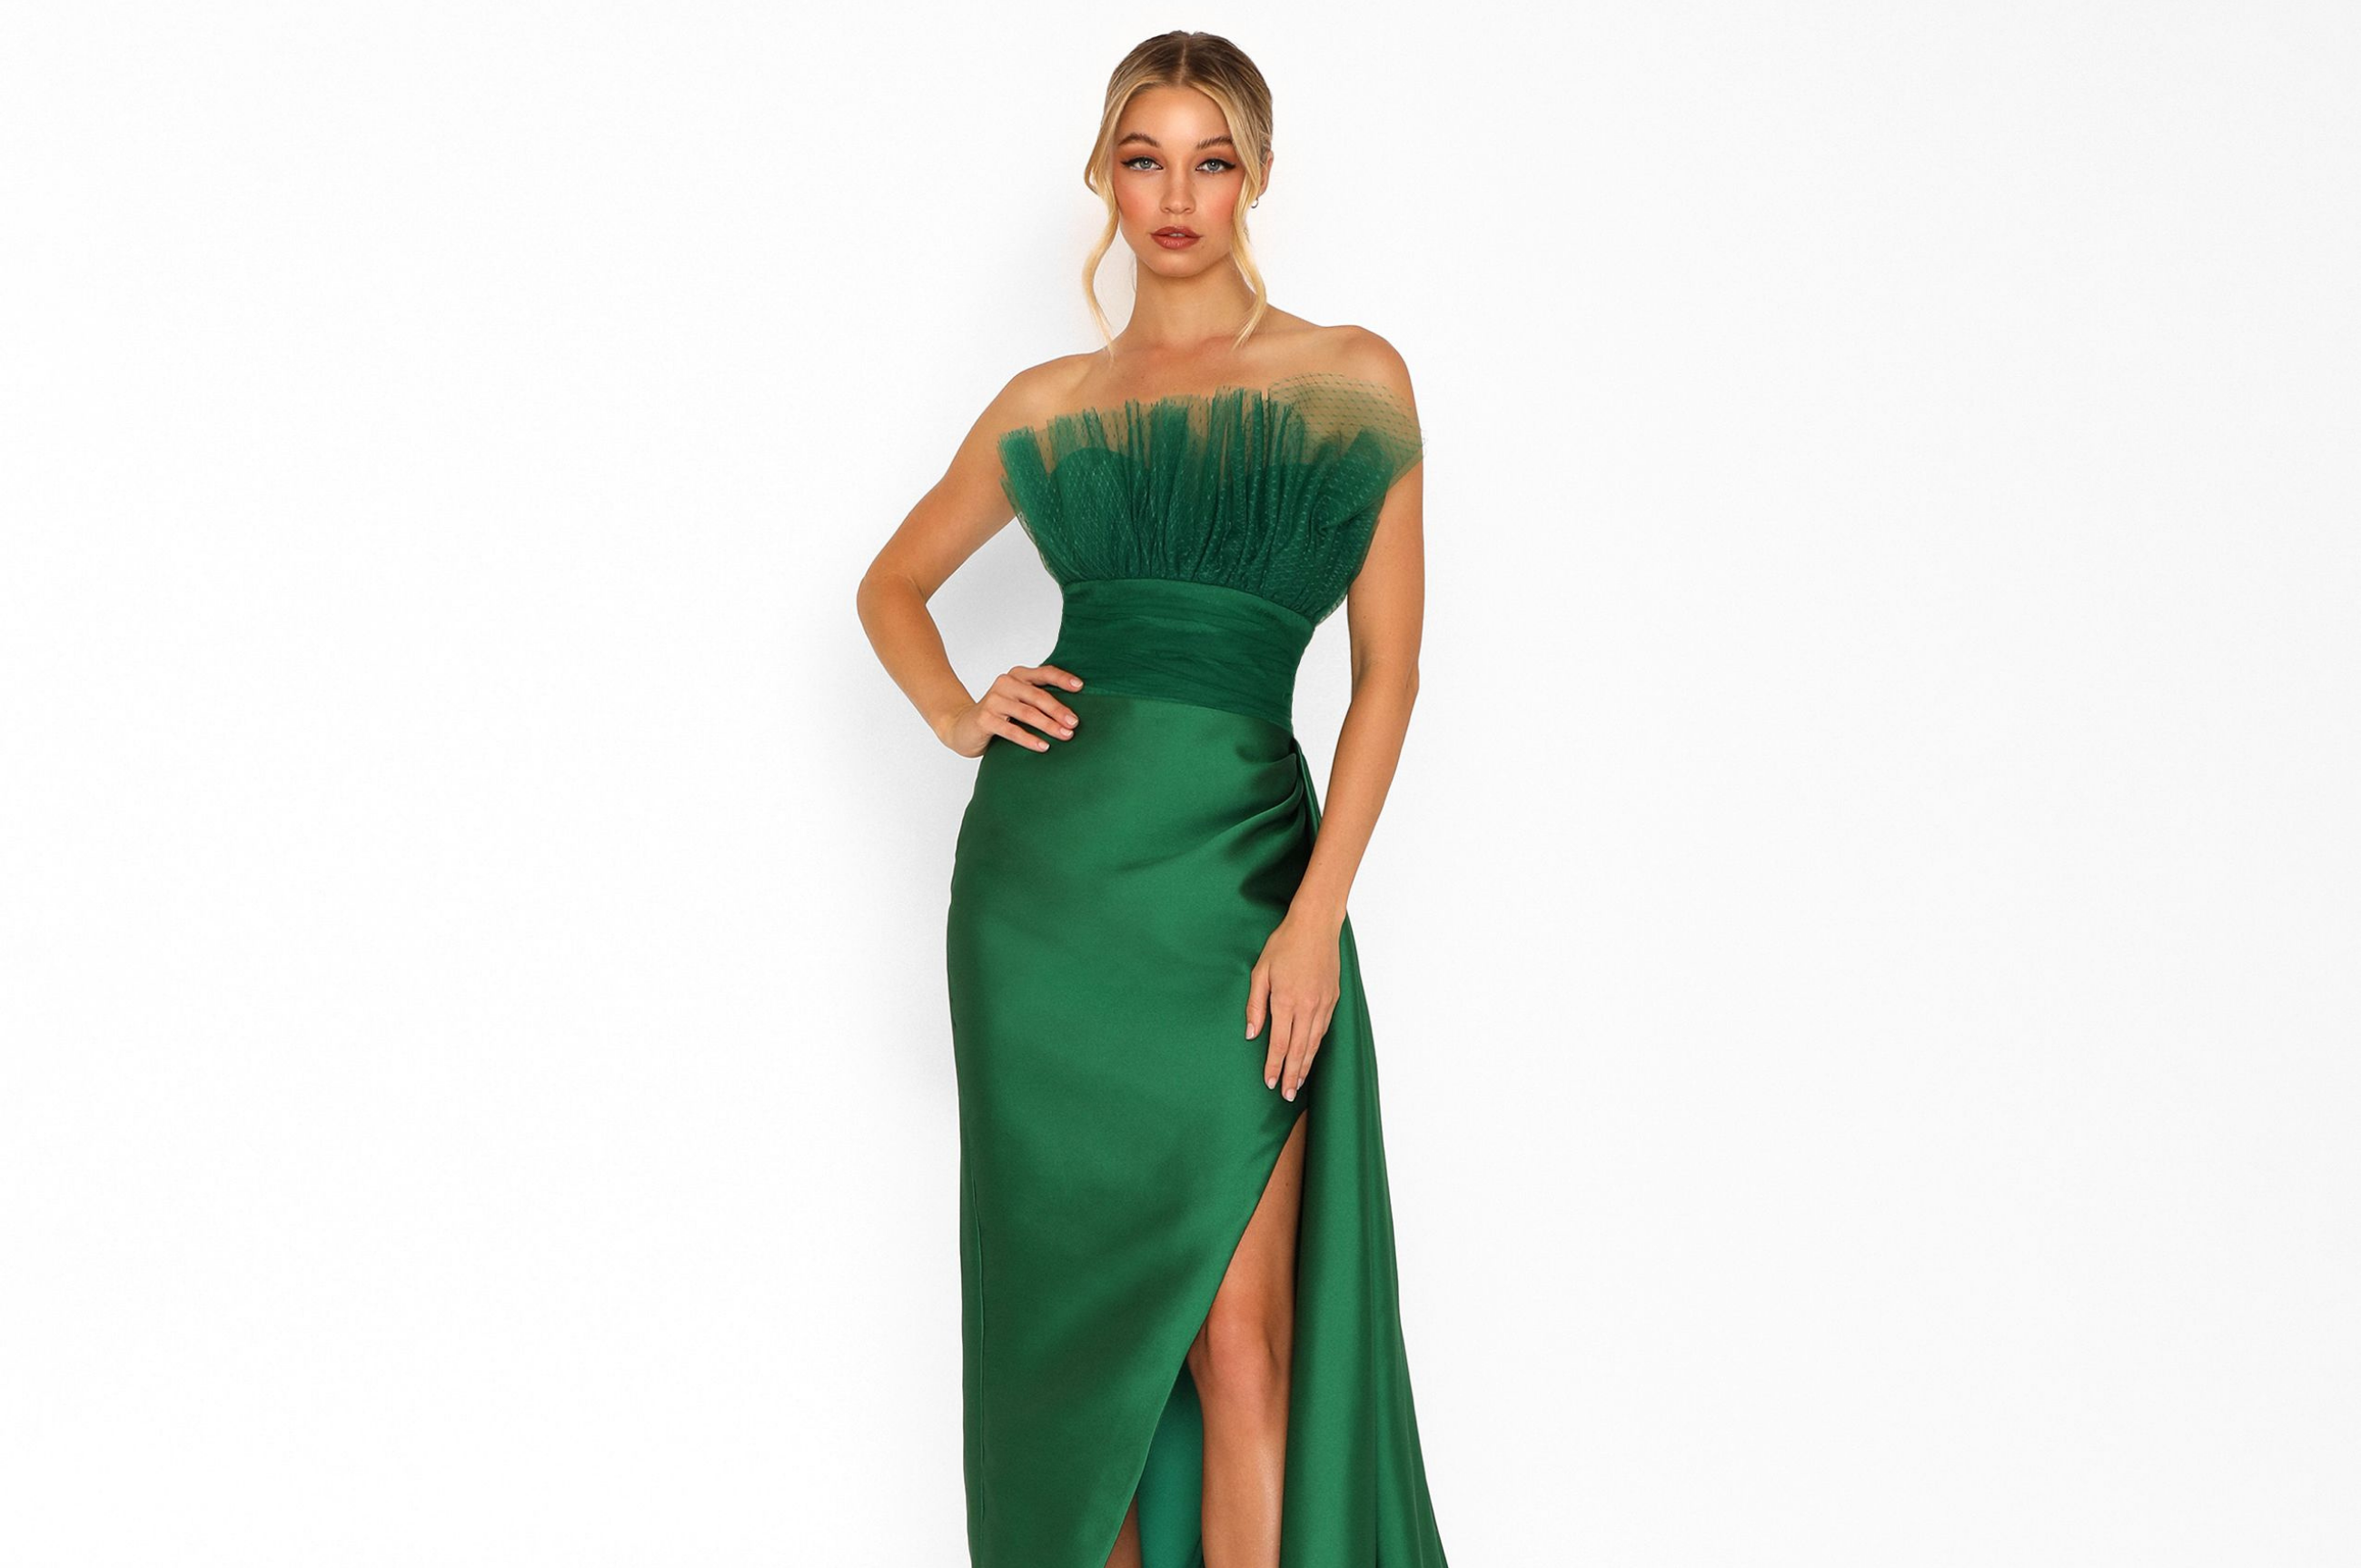 Model wearing a long green dress